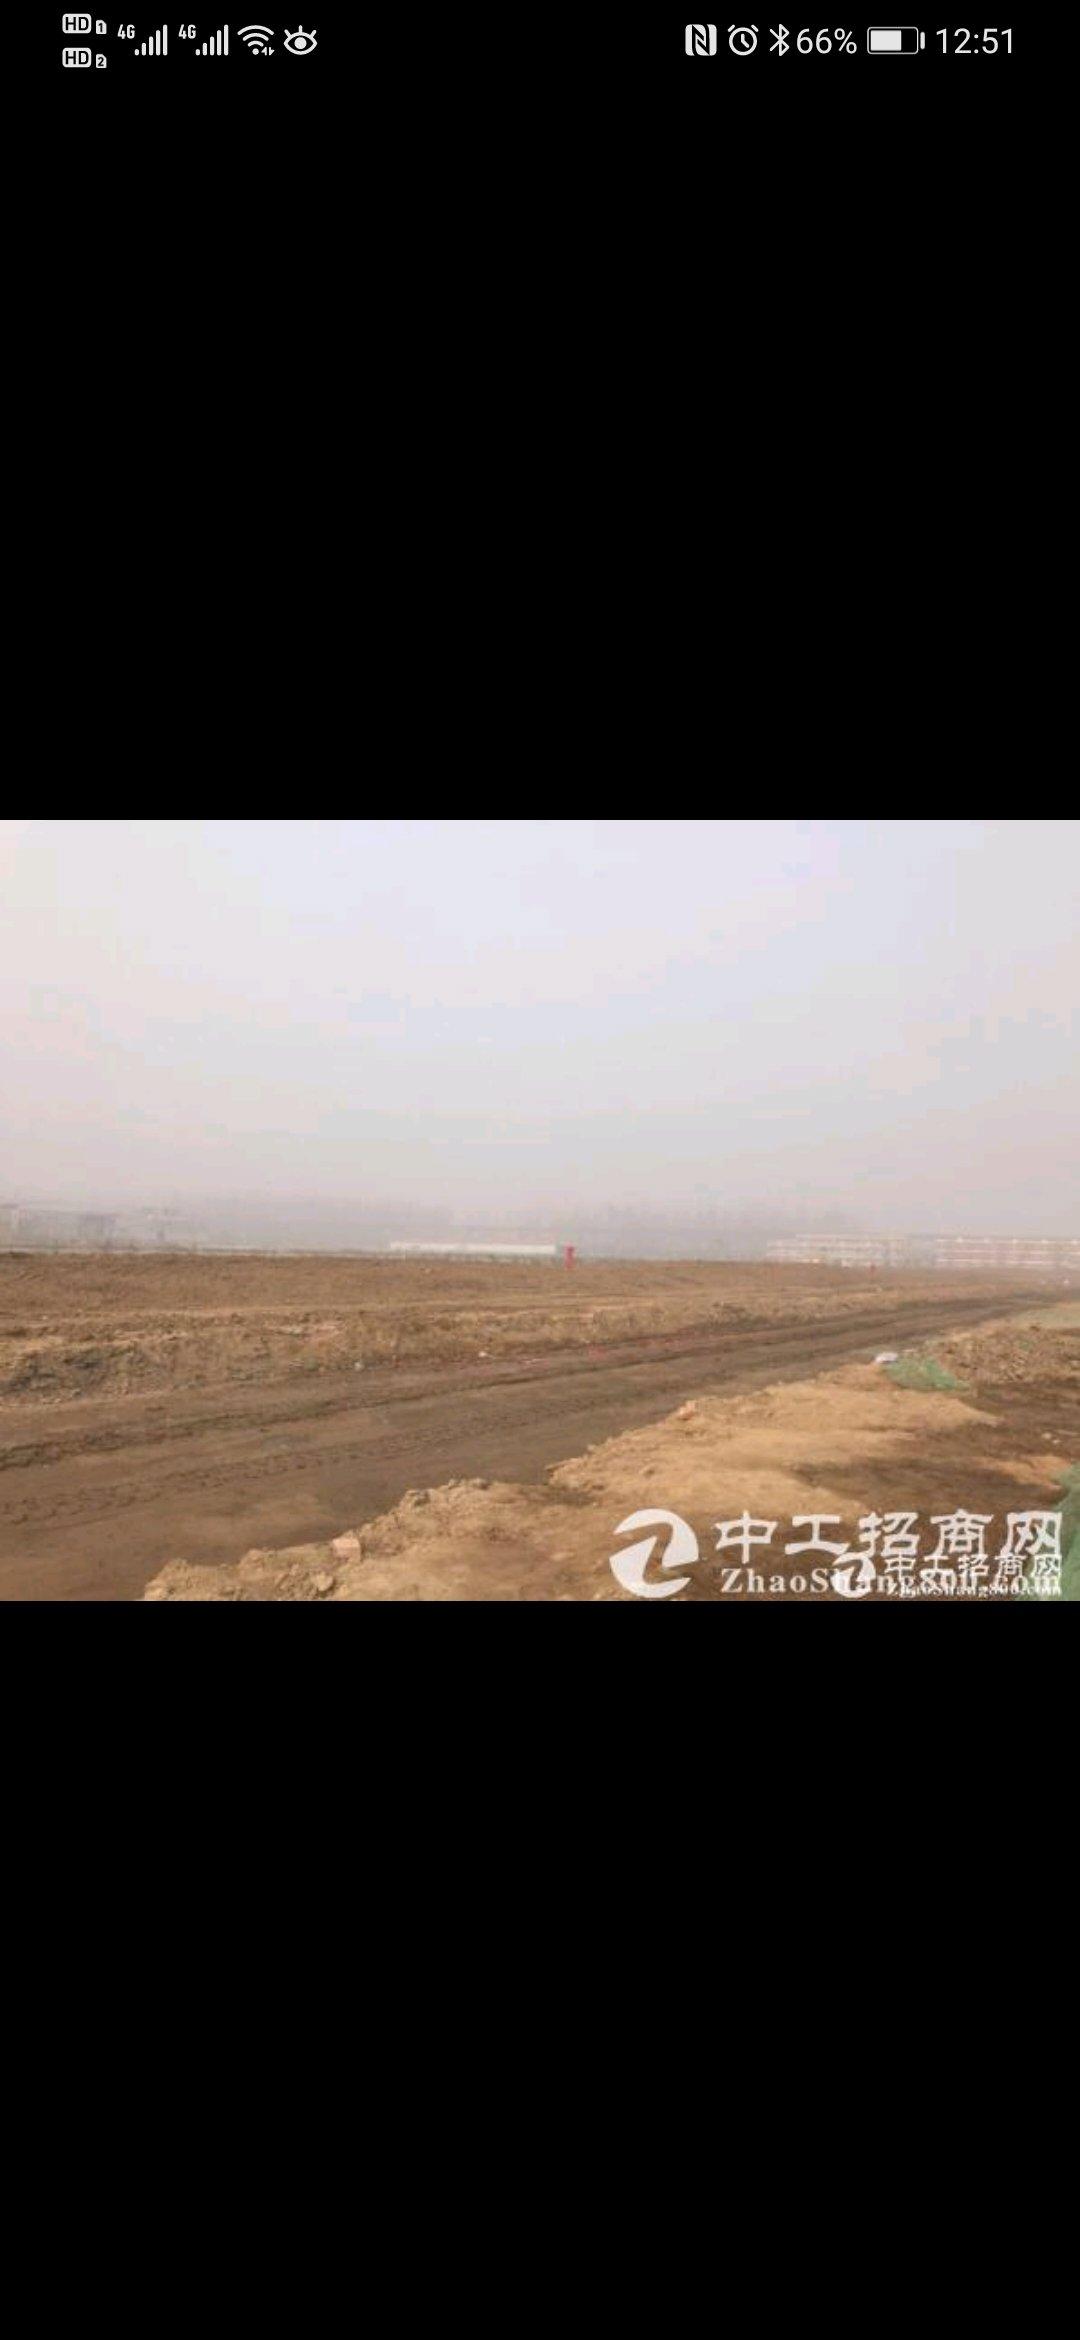 杭州市萧山区200亩国有指标红本工业土地出售，产权清晰